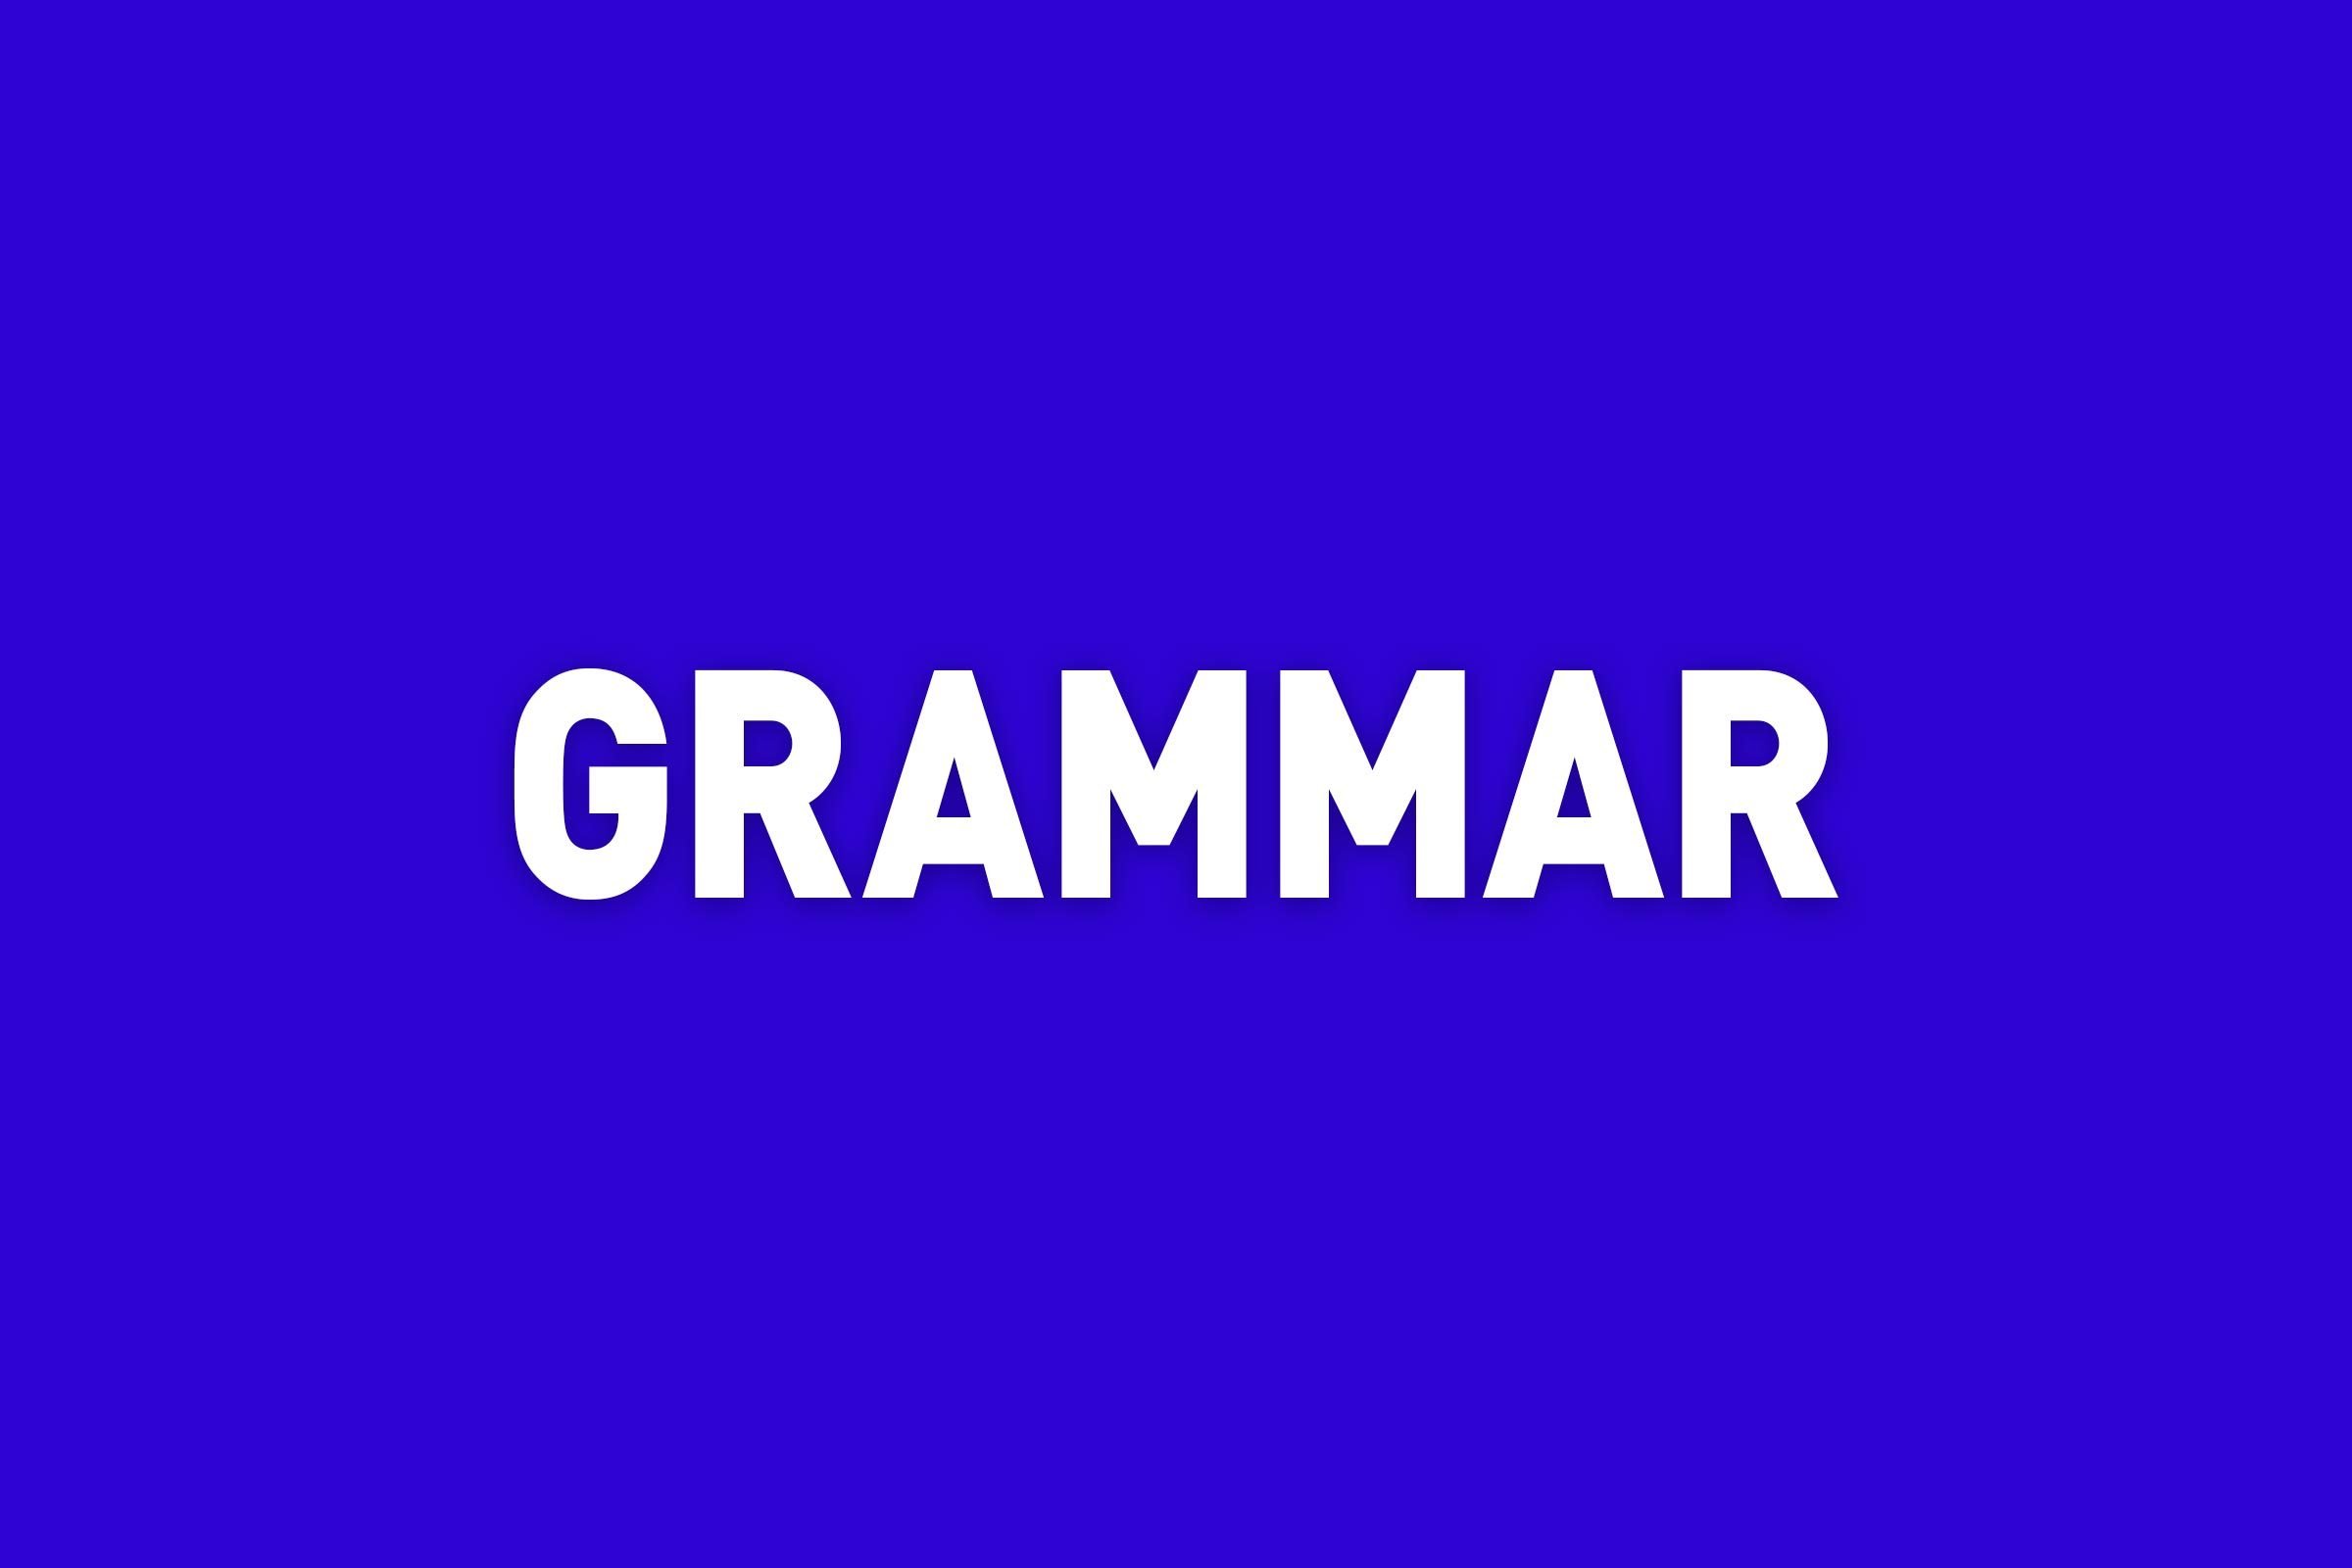 "Grammar" written in Jeopardy style